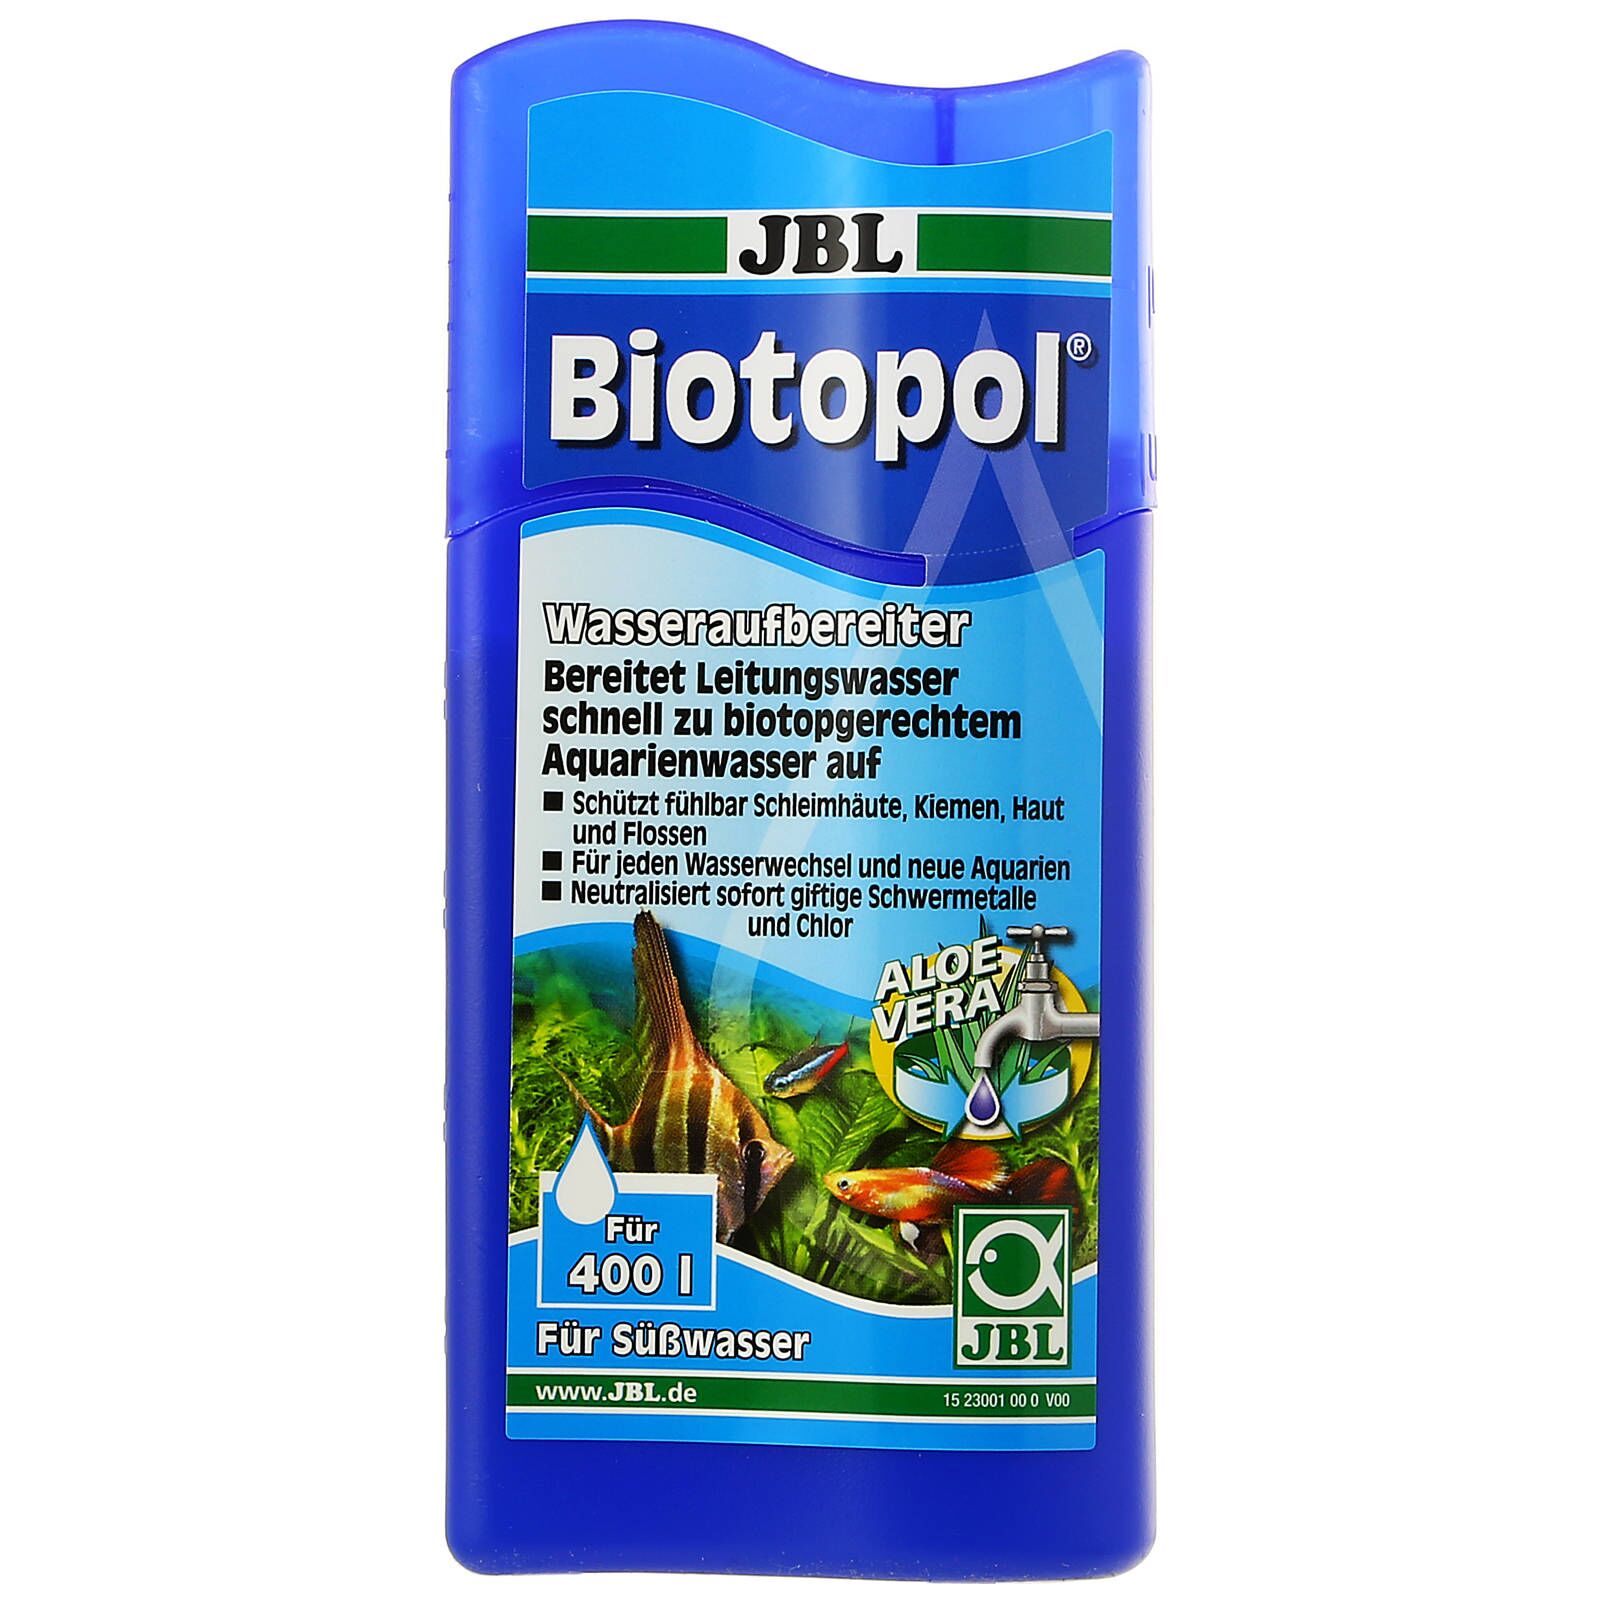 JBL - Biotopol